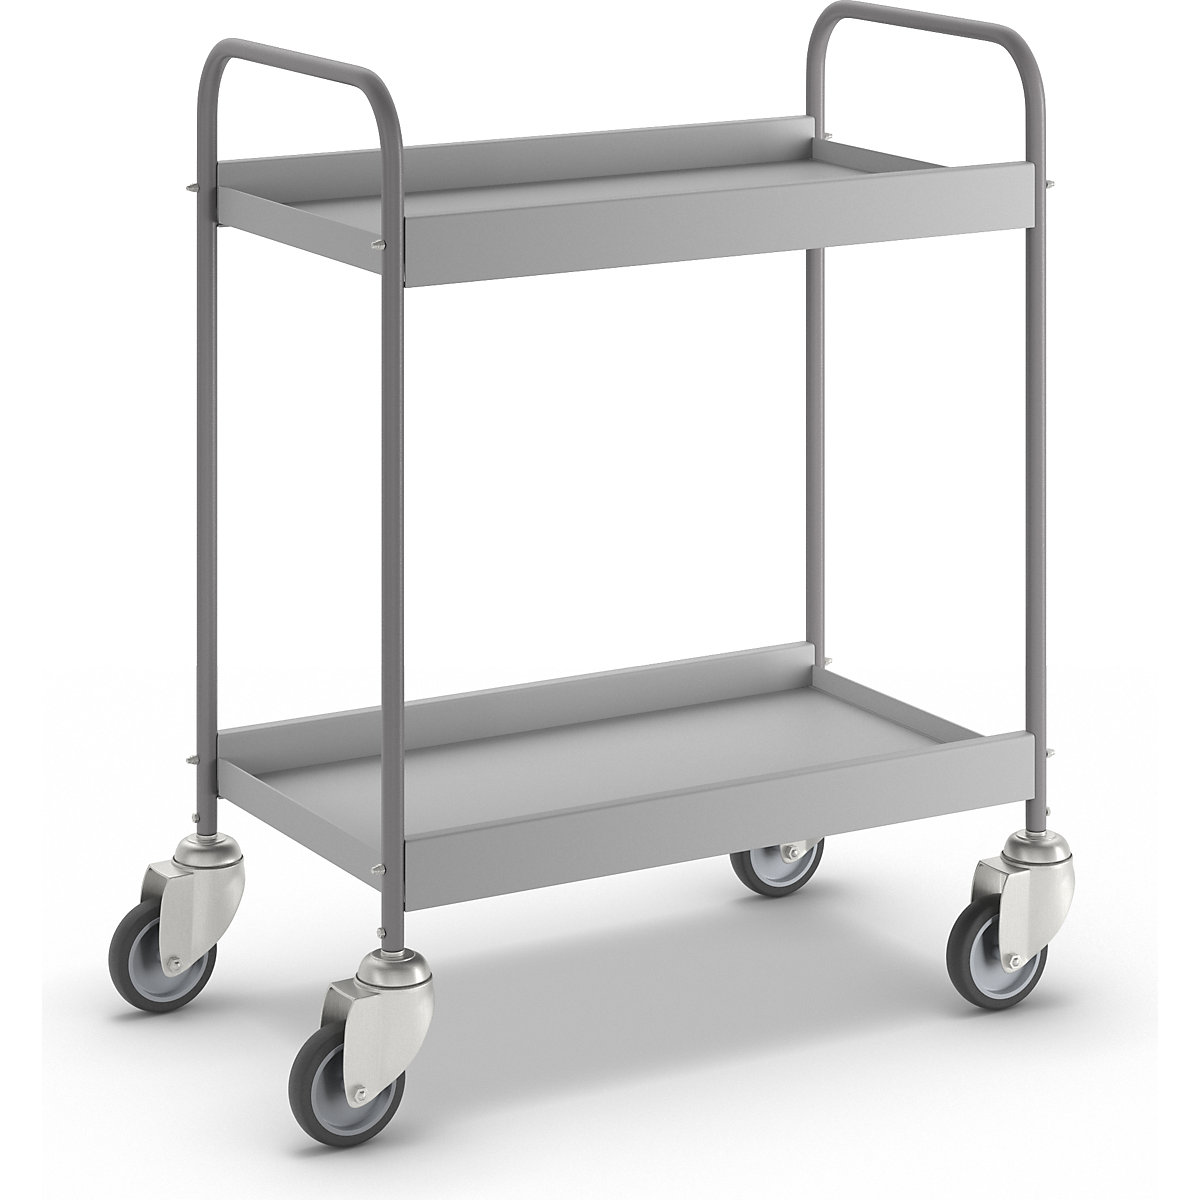 Order picking trolley – eurokraft pro